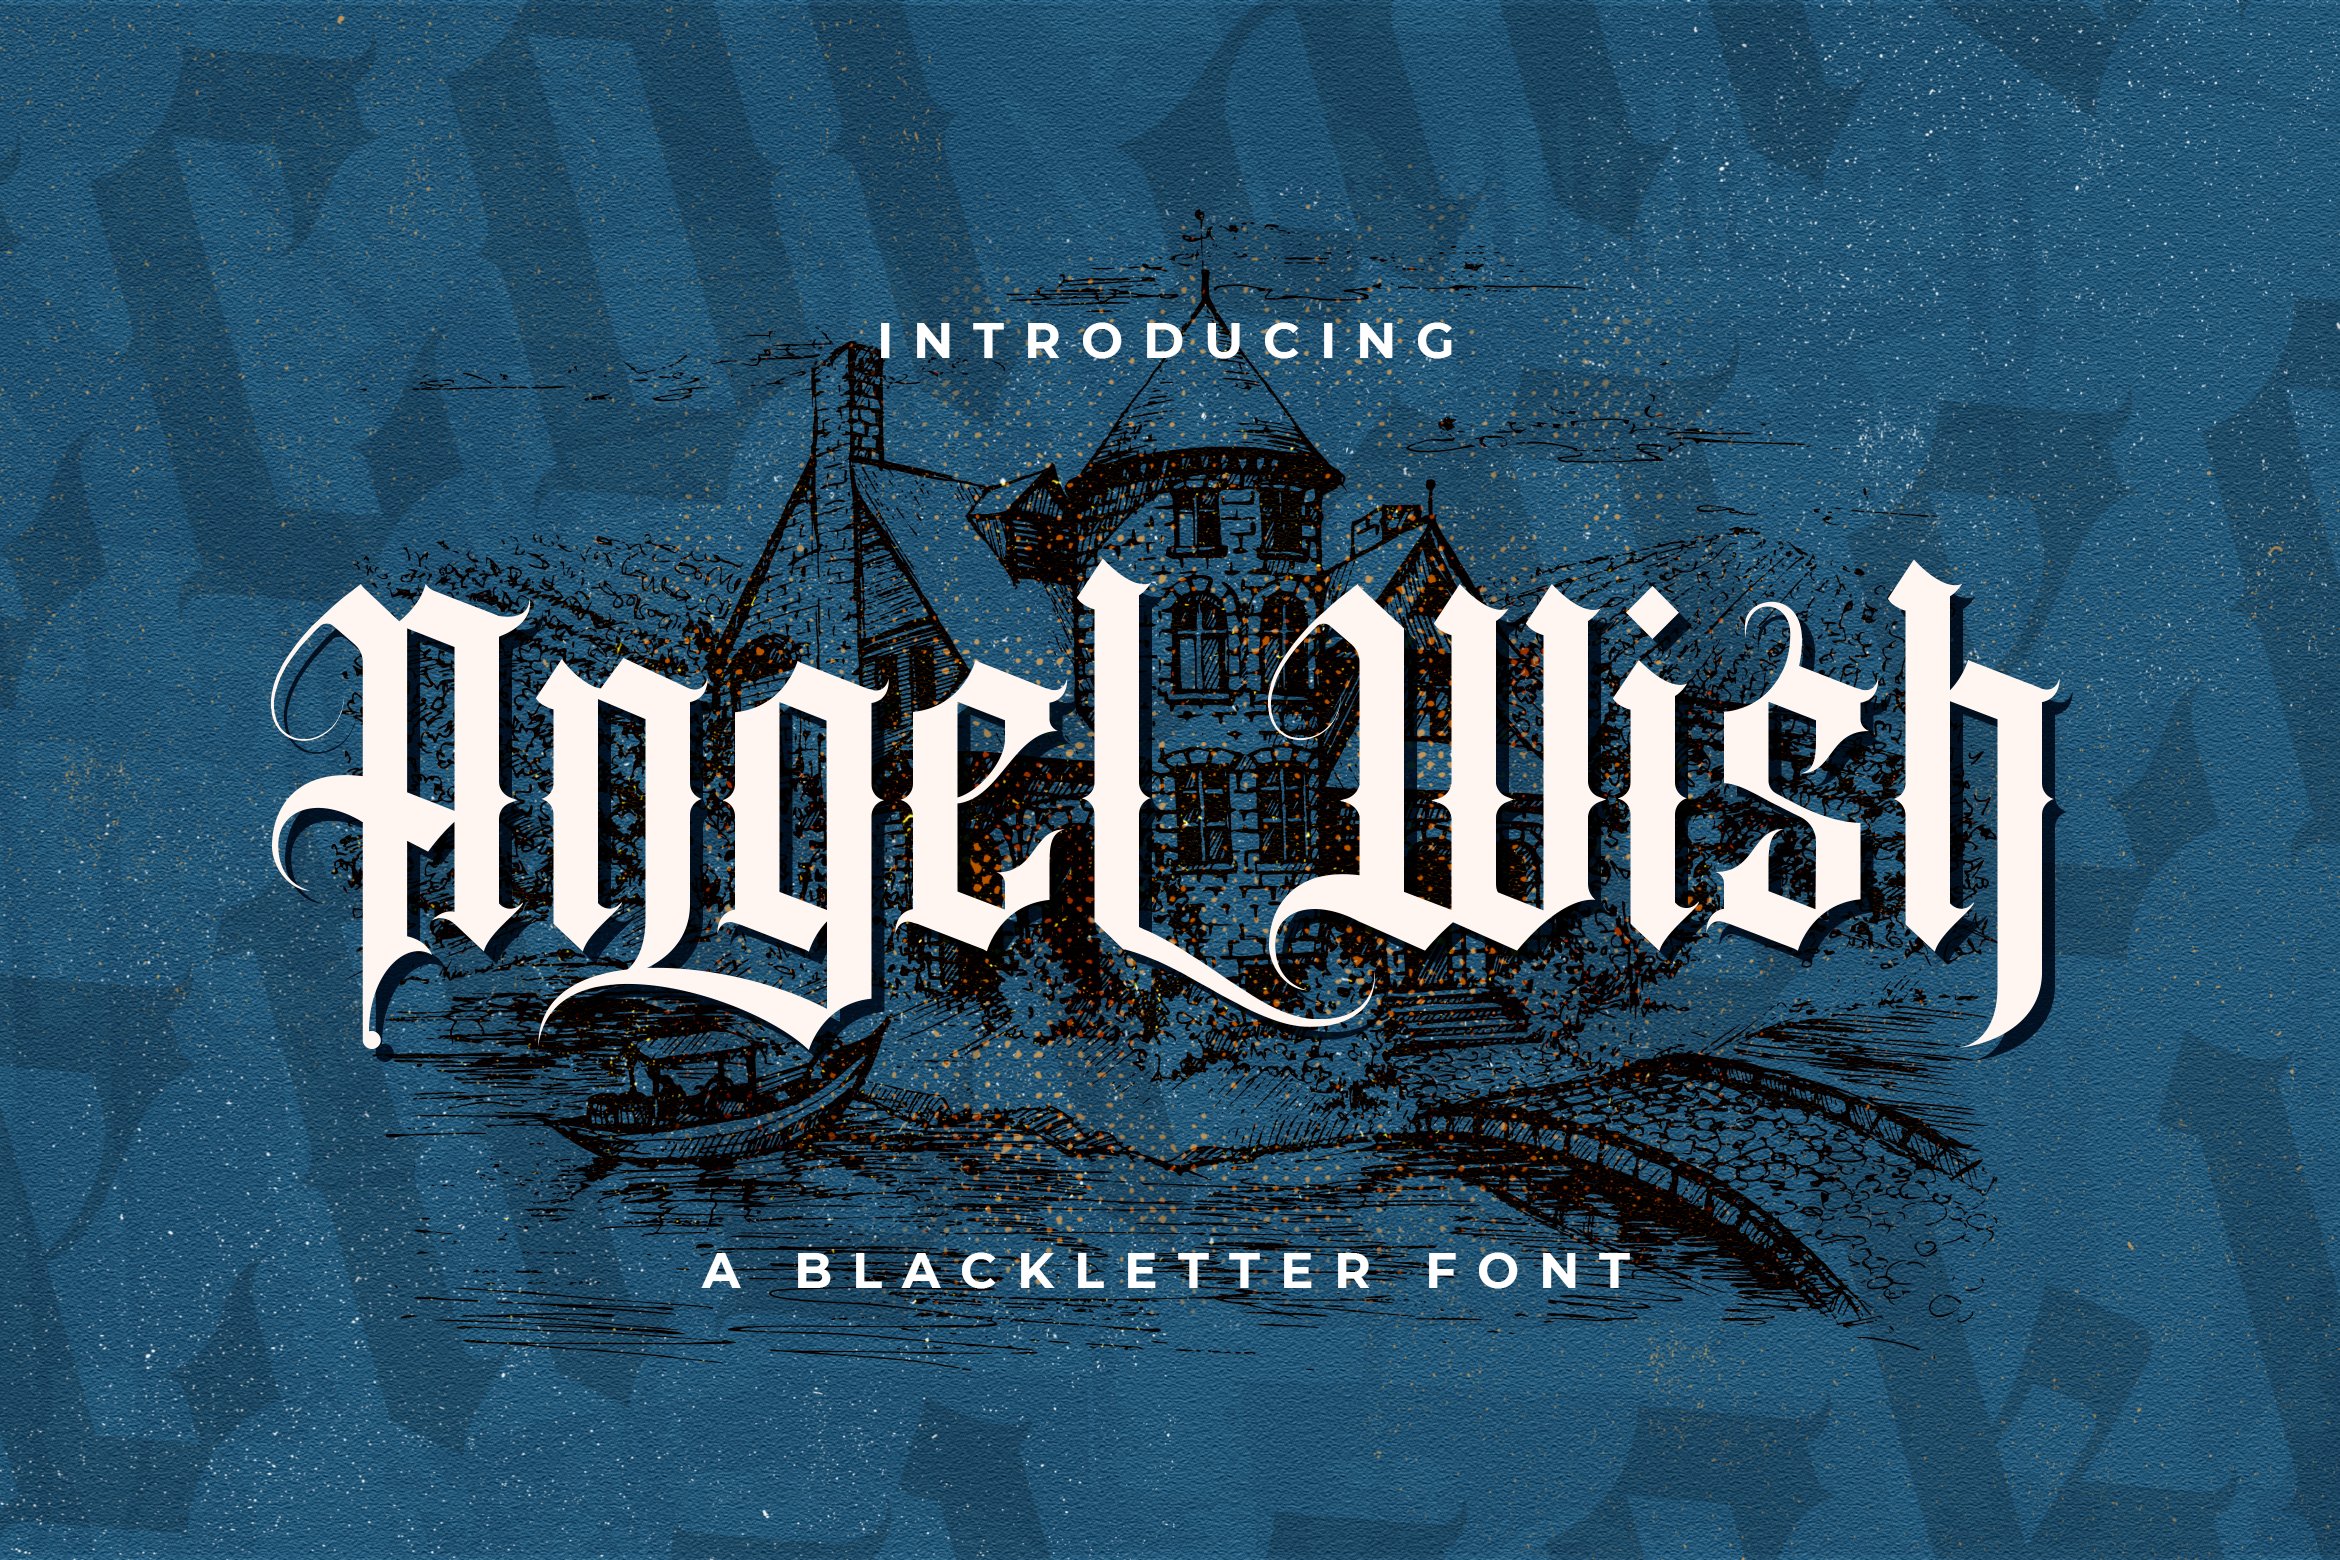 Angel Wish - Blackletter Font cover image.